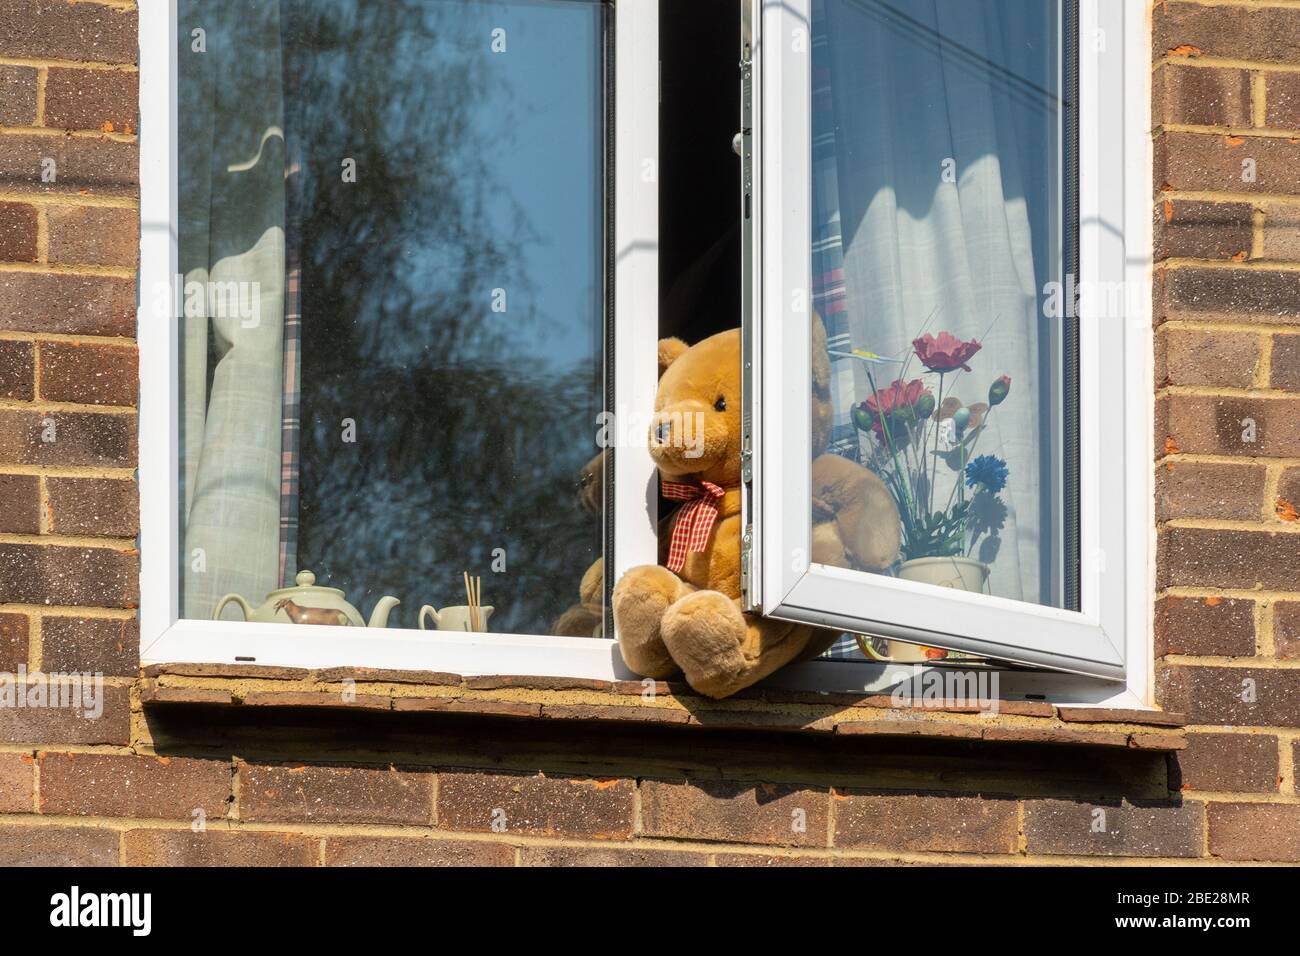 10. April 2020. Während der Aussperrung des Coronavirus Covid-19 im Jahr 2020 entwickeln Gemeinden Ideen, um Kinder zu unterhalten. Eine Idee ist, Teddybären in Fenster von Häusern zu stecken, und Eltern können ihre Kinder auf Bärenjagden in ihrer Nachbarschaft mitnehmen. Dieses Haus hat einen Teddybär in einem offenen Fenster im Obergeschoss. Stockfoto